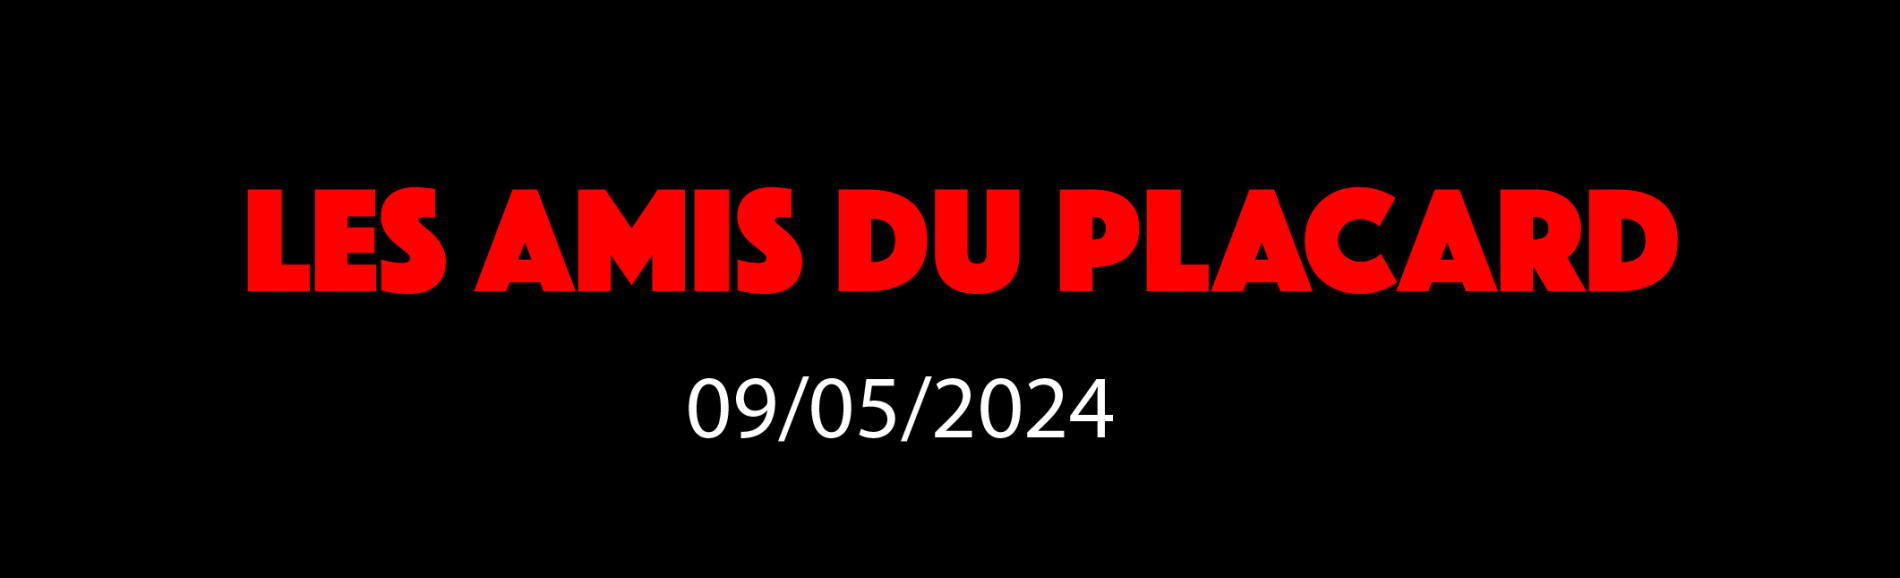 LES AMIS DU PLACARD - 9/05/2024